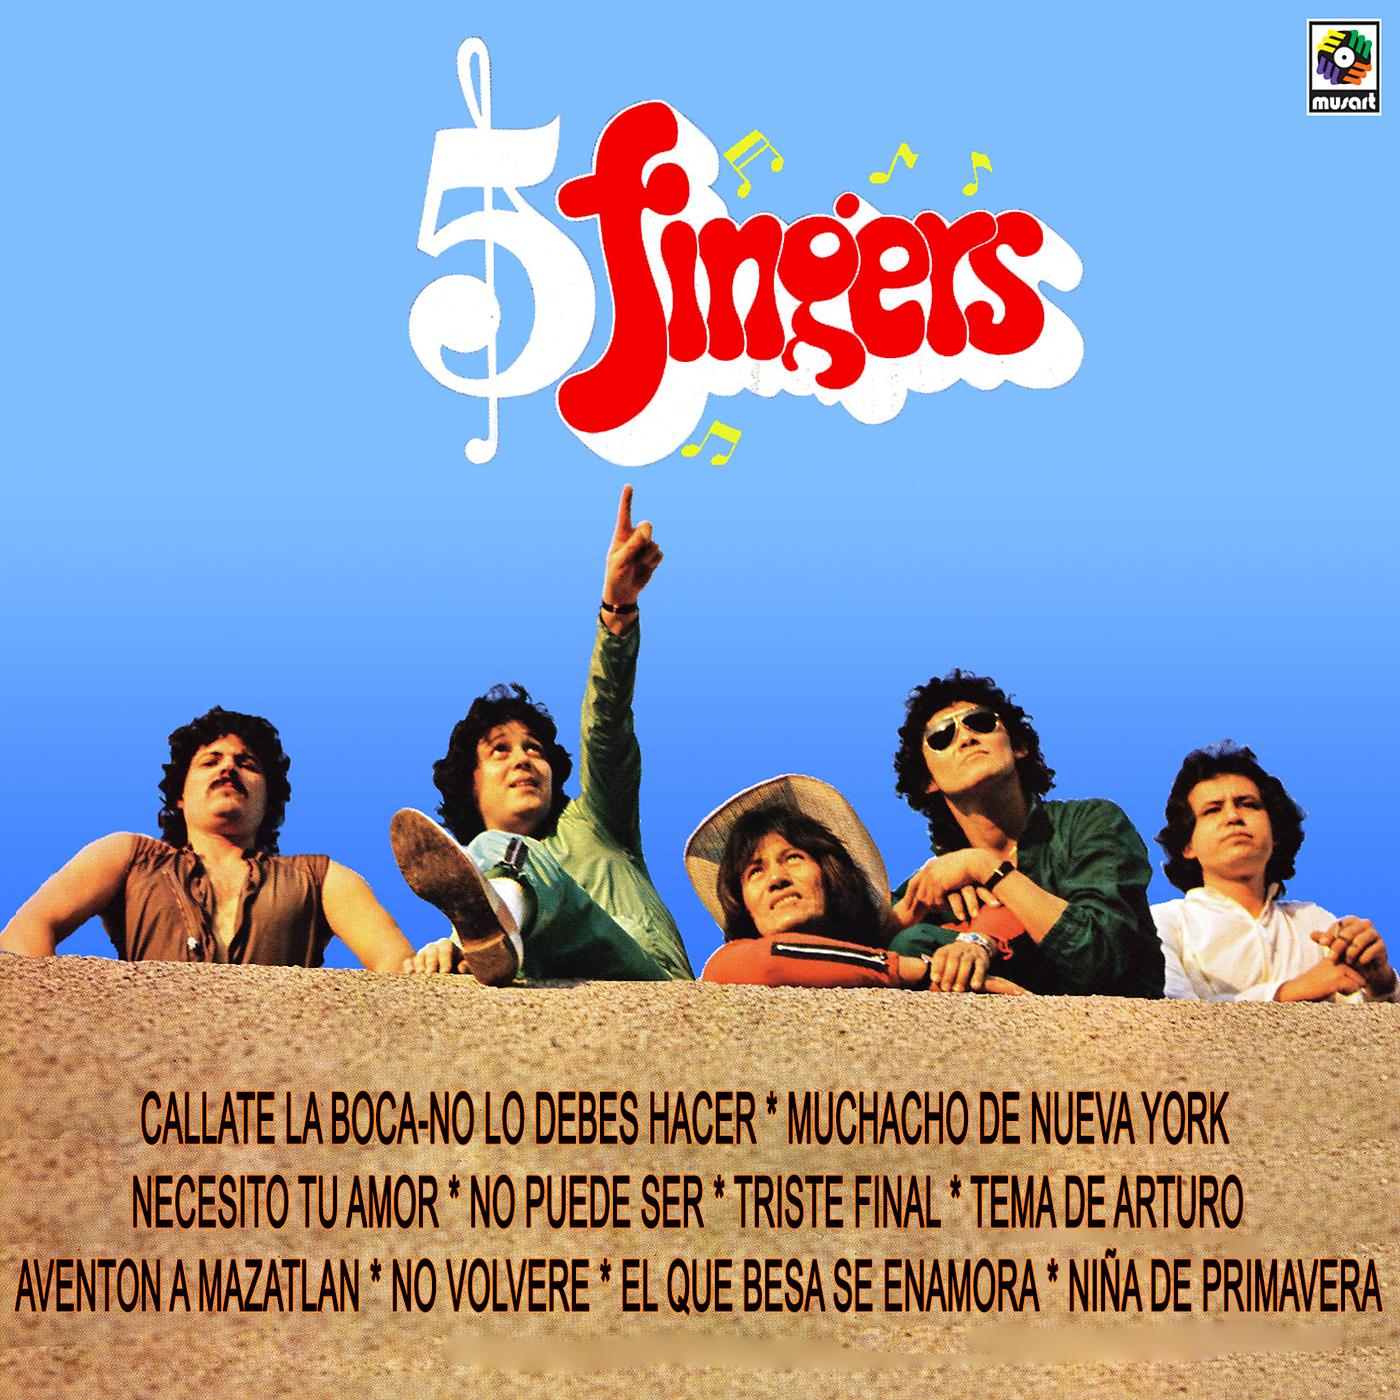 Постер альбома Five Fingers